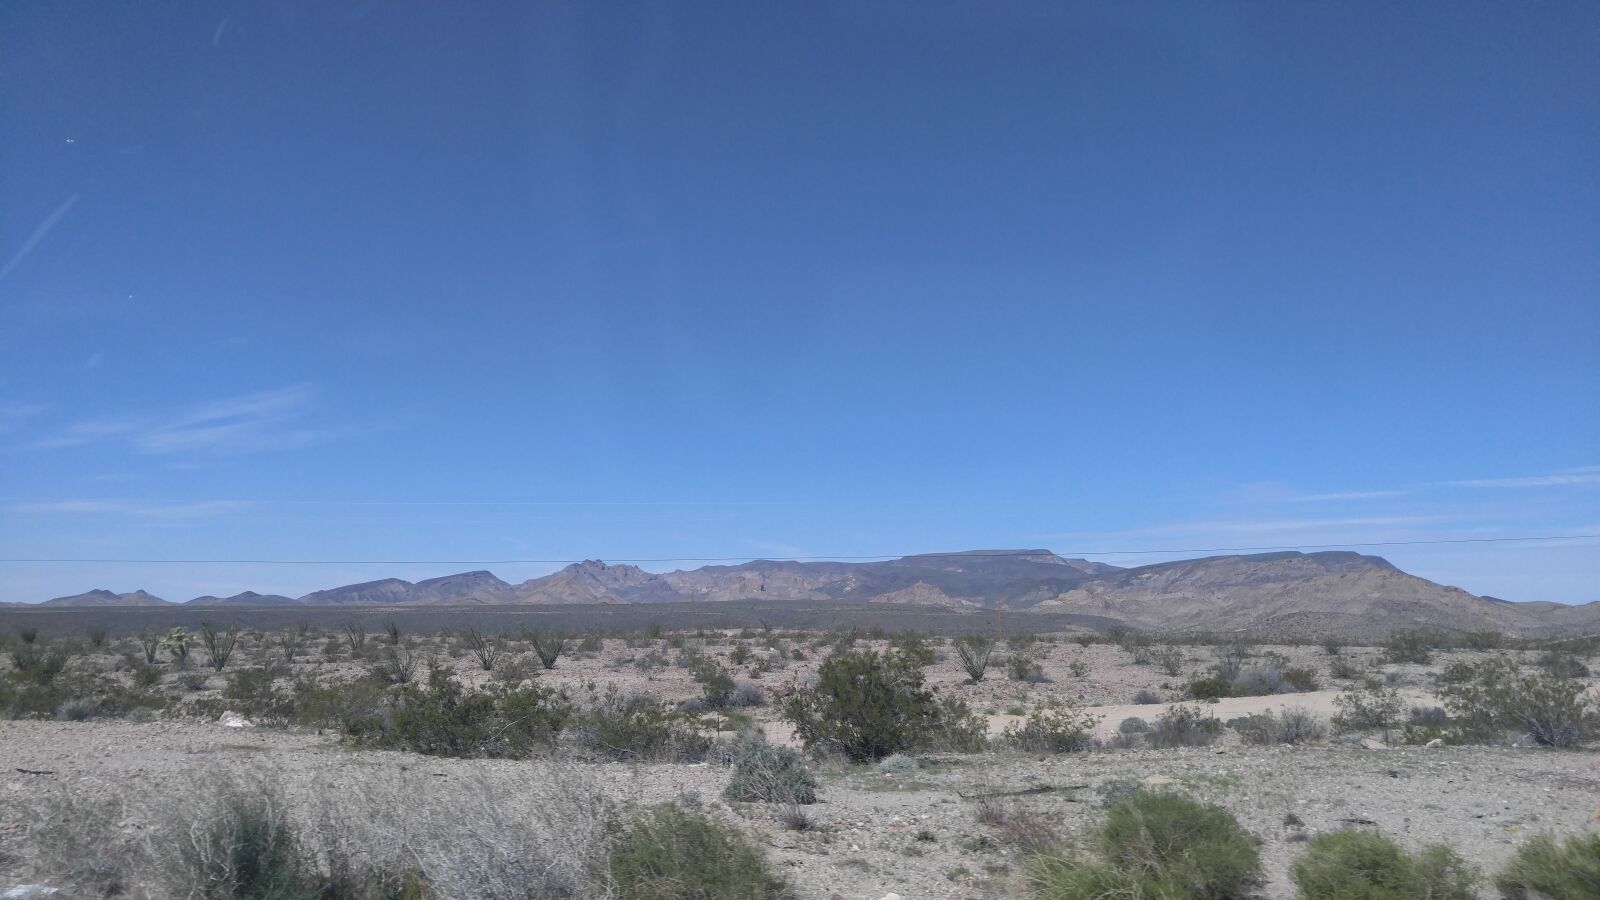 LG V10 sample photo. Desert, california, daytime photography